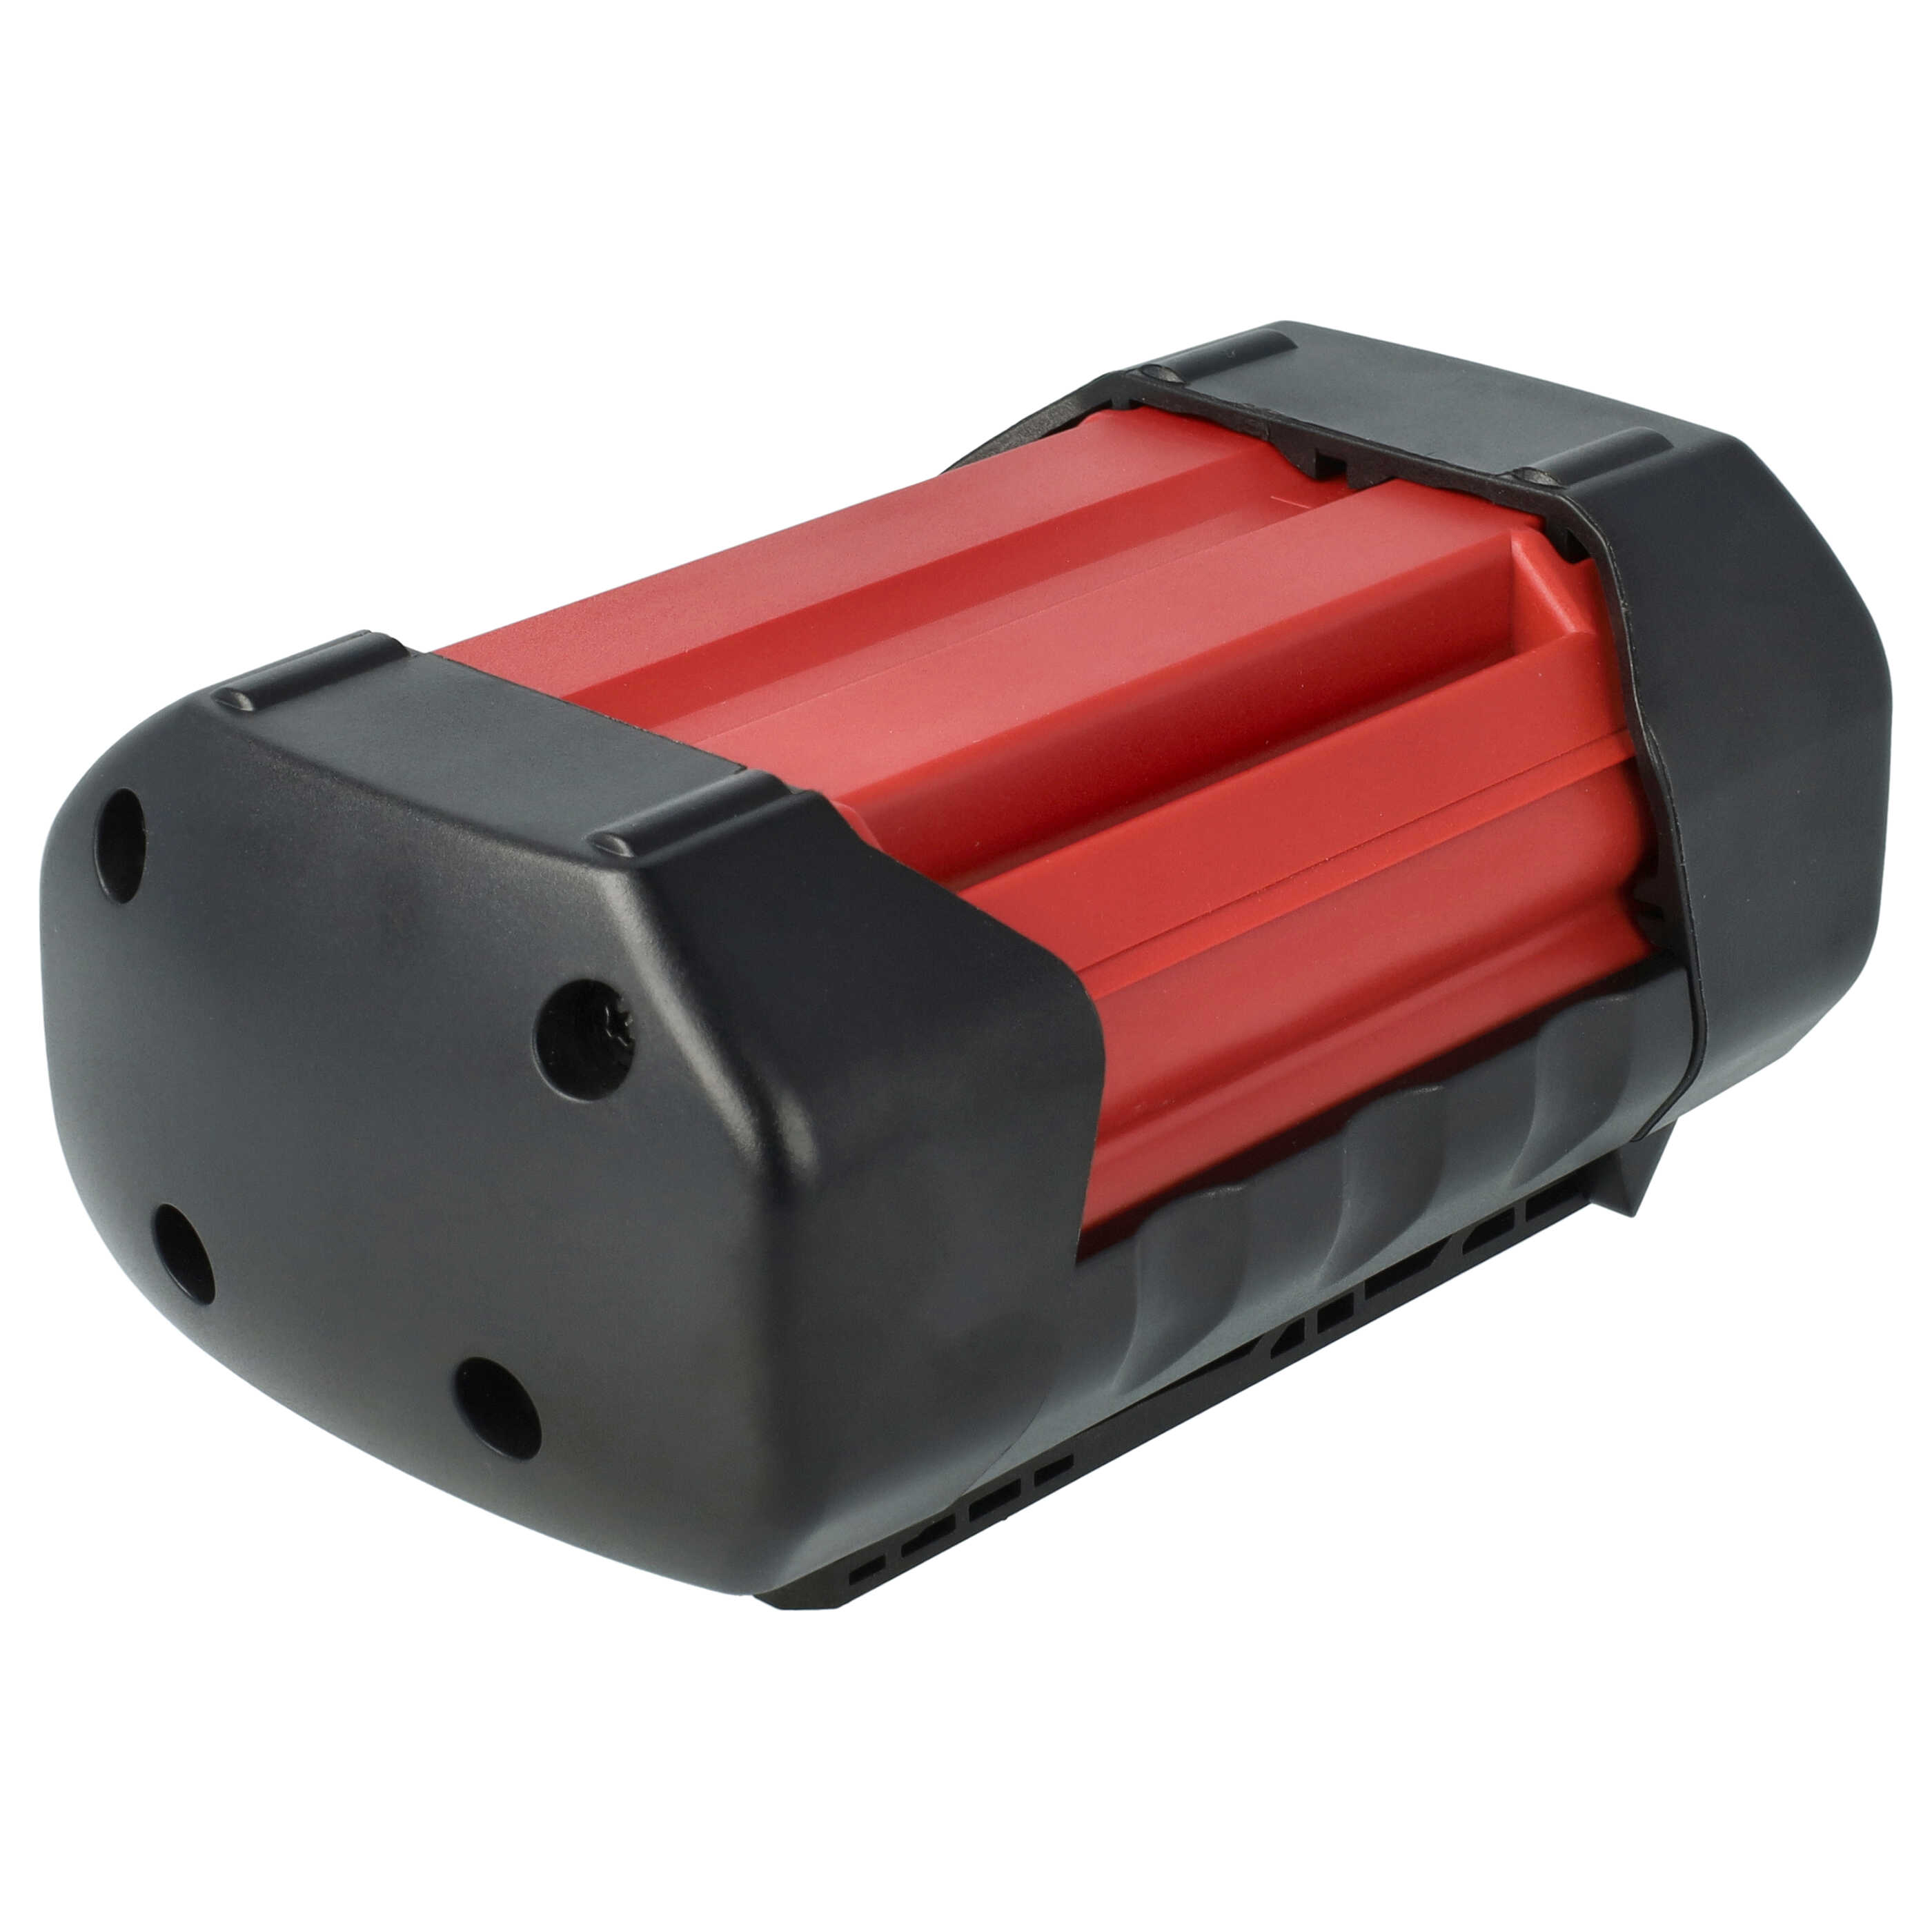 Akumulator do robota koszącego zamiennik Bosch 1600A0022N - 3000 mAh 36 V Li-Ion, czarny / czerwony